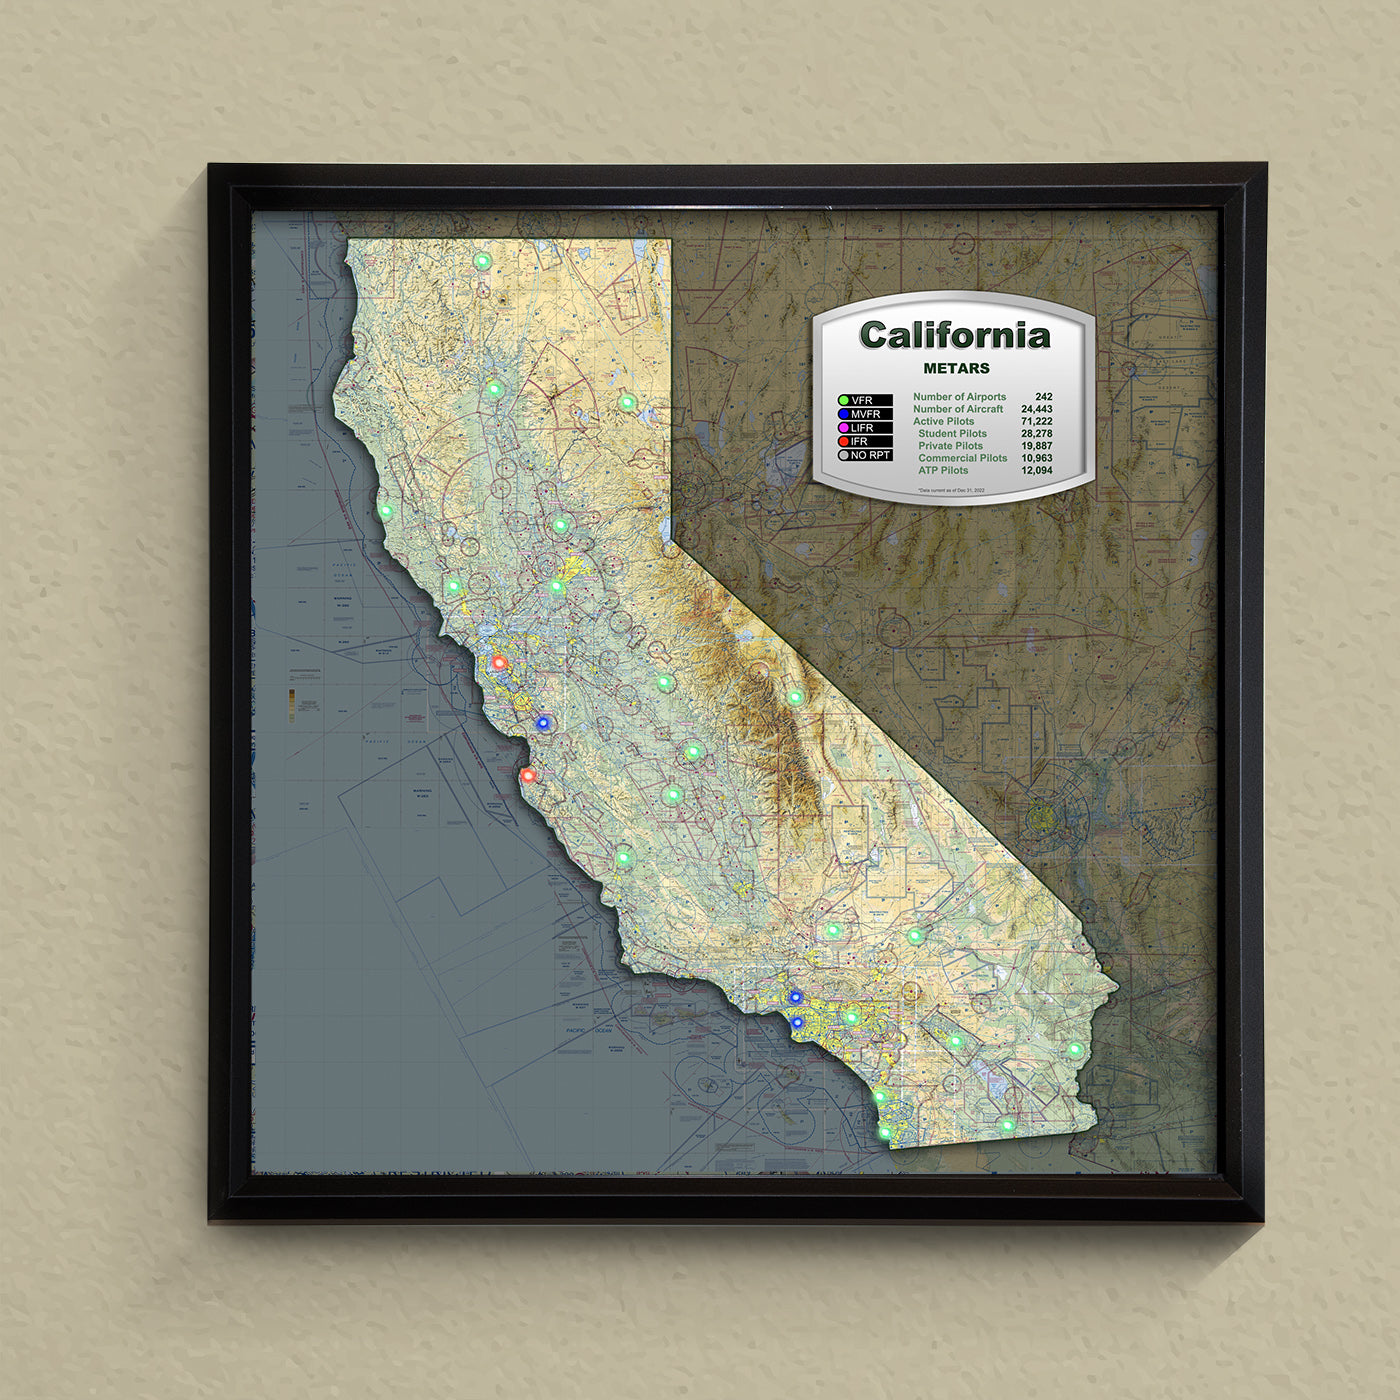 State METAR Map - California